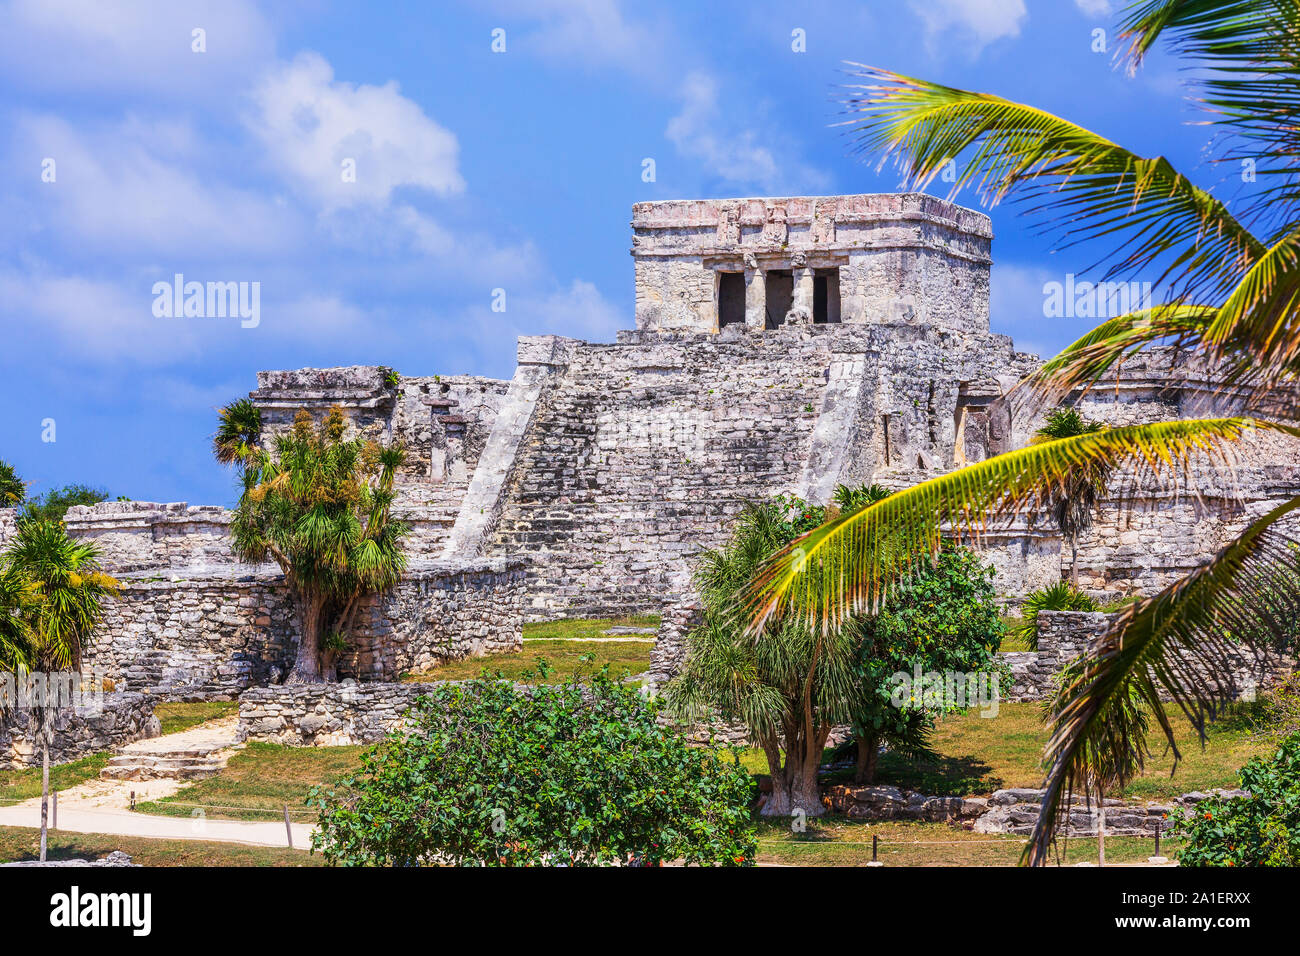 Tulum, Messico. El Castillo (Castello) il tempio principale della città maya. Foto Stock